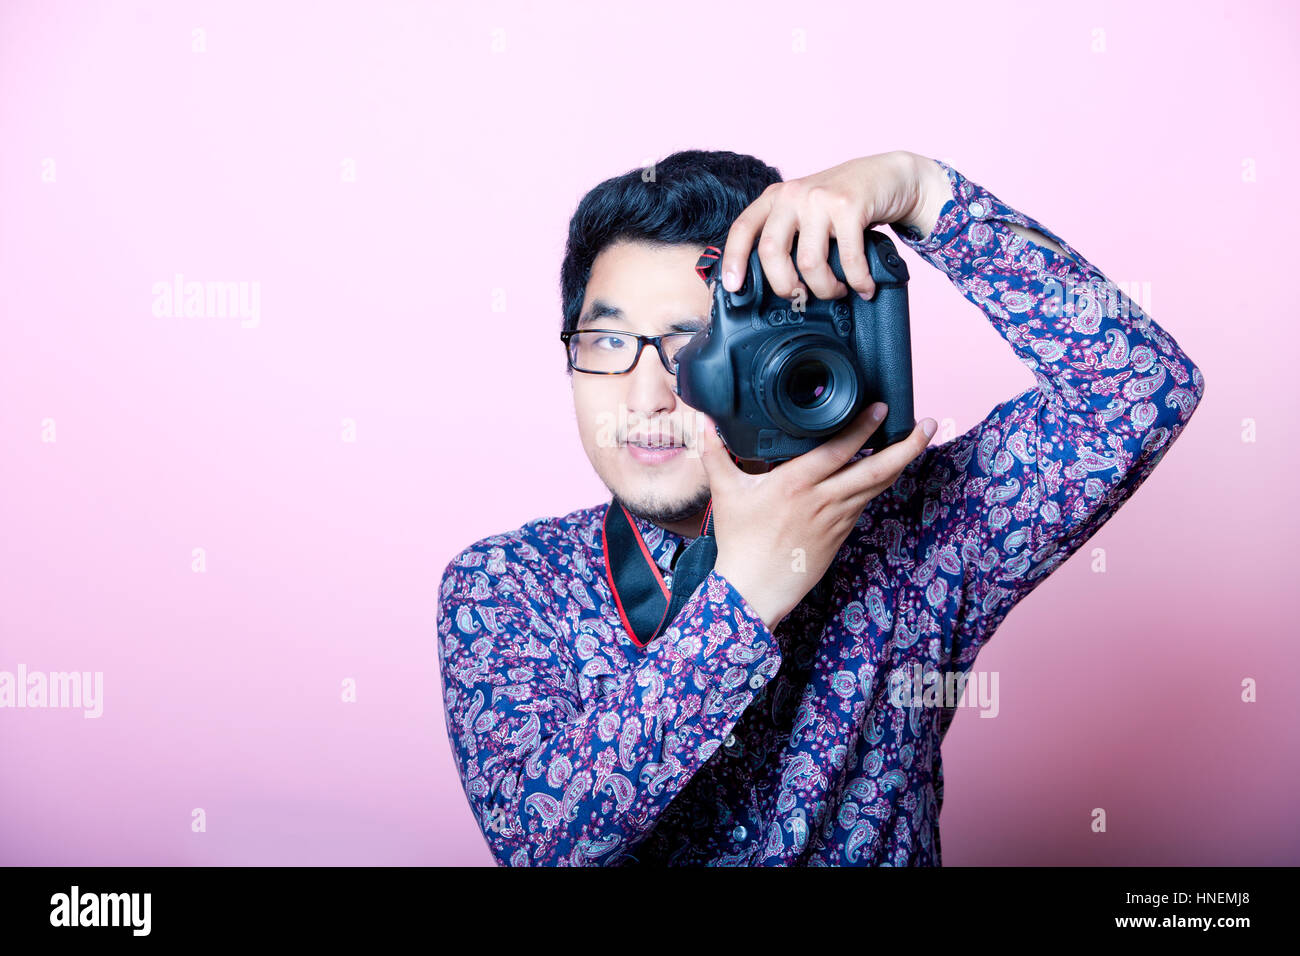 Photographe asiatique créative Banque D'Images